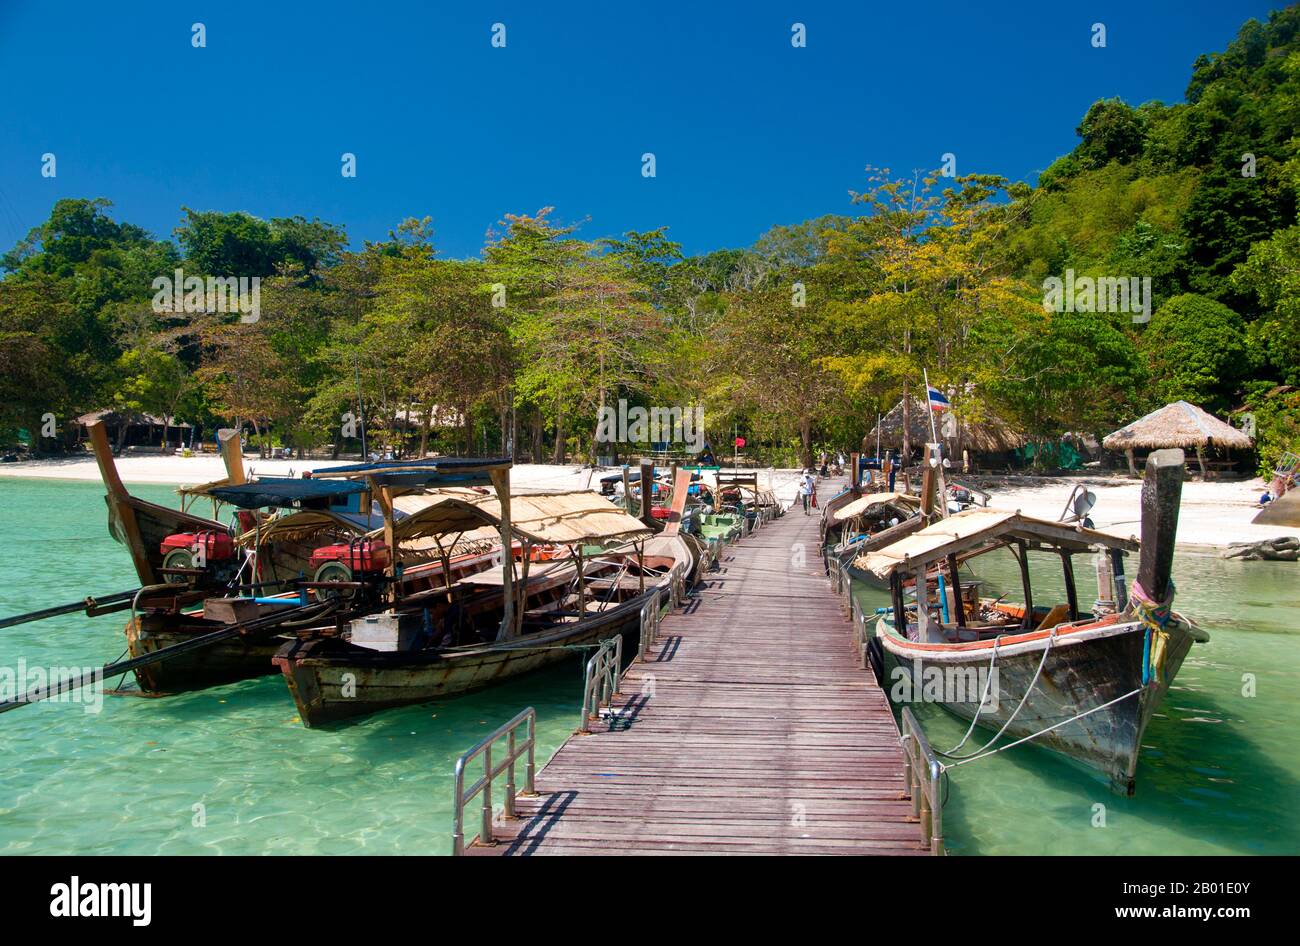 Thaïlande: Jetée à Ko Surin Nua, parc national marin des îles Surin. Le parc national marin de Ko Surin est l’une des dernières frontières de la Thaïlande pour la plongée et la voile. Ce parc marin de la mer d’Andaman abrite certains des récifs coralliens les plus développés du pays. L'archipel de Koh Surin est une zone de 135 kilomètres carrés située dans la mer d'Andaman à environ 60 kilomètres (38 milles) de la province continentale de Ranong. Les cinq îles du parc se trouvent juste au sud de la frontière avec la Birmanie. Koh Surin Nua, l'une des deux îles principales, a une superficie d'environ 19 kilomètres carrés, avec 240 mètres sa plus haute altitude. Banque D'Images